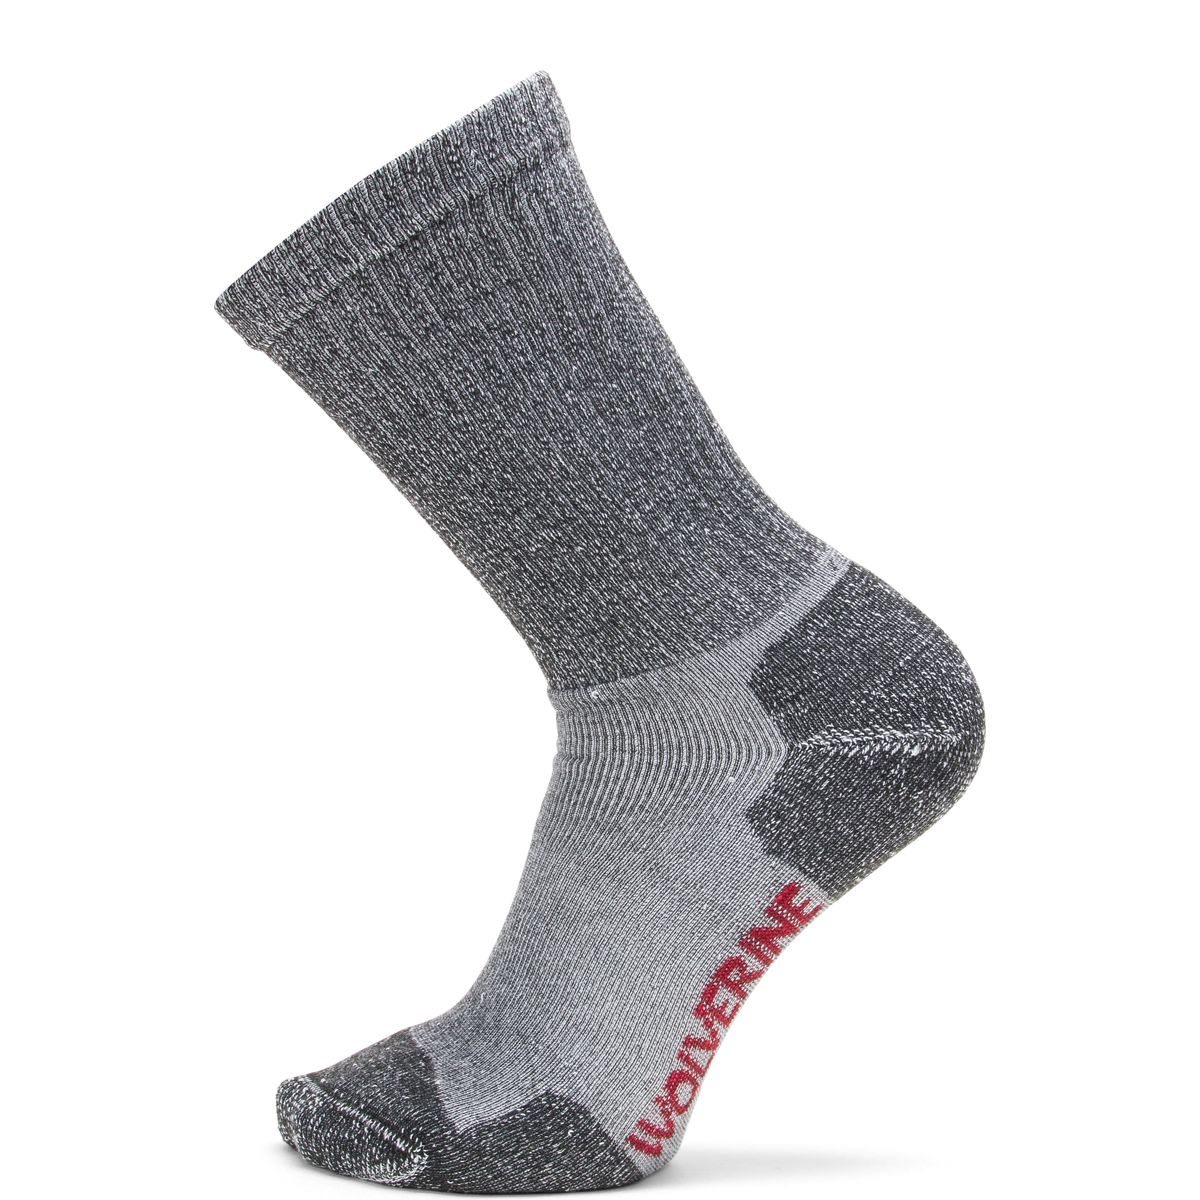 2-PK. Safety Toe Moisture Wicking Sock - Socks